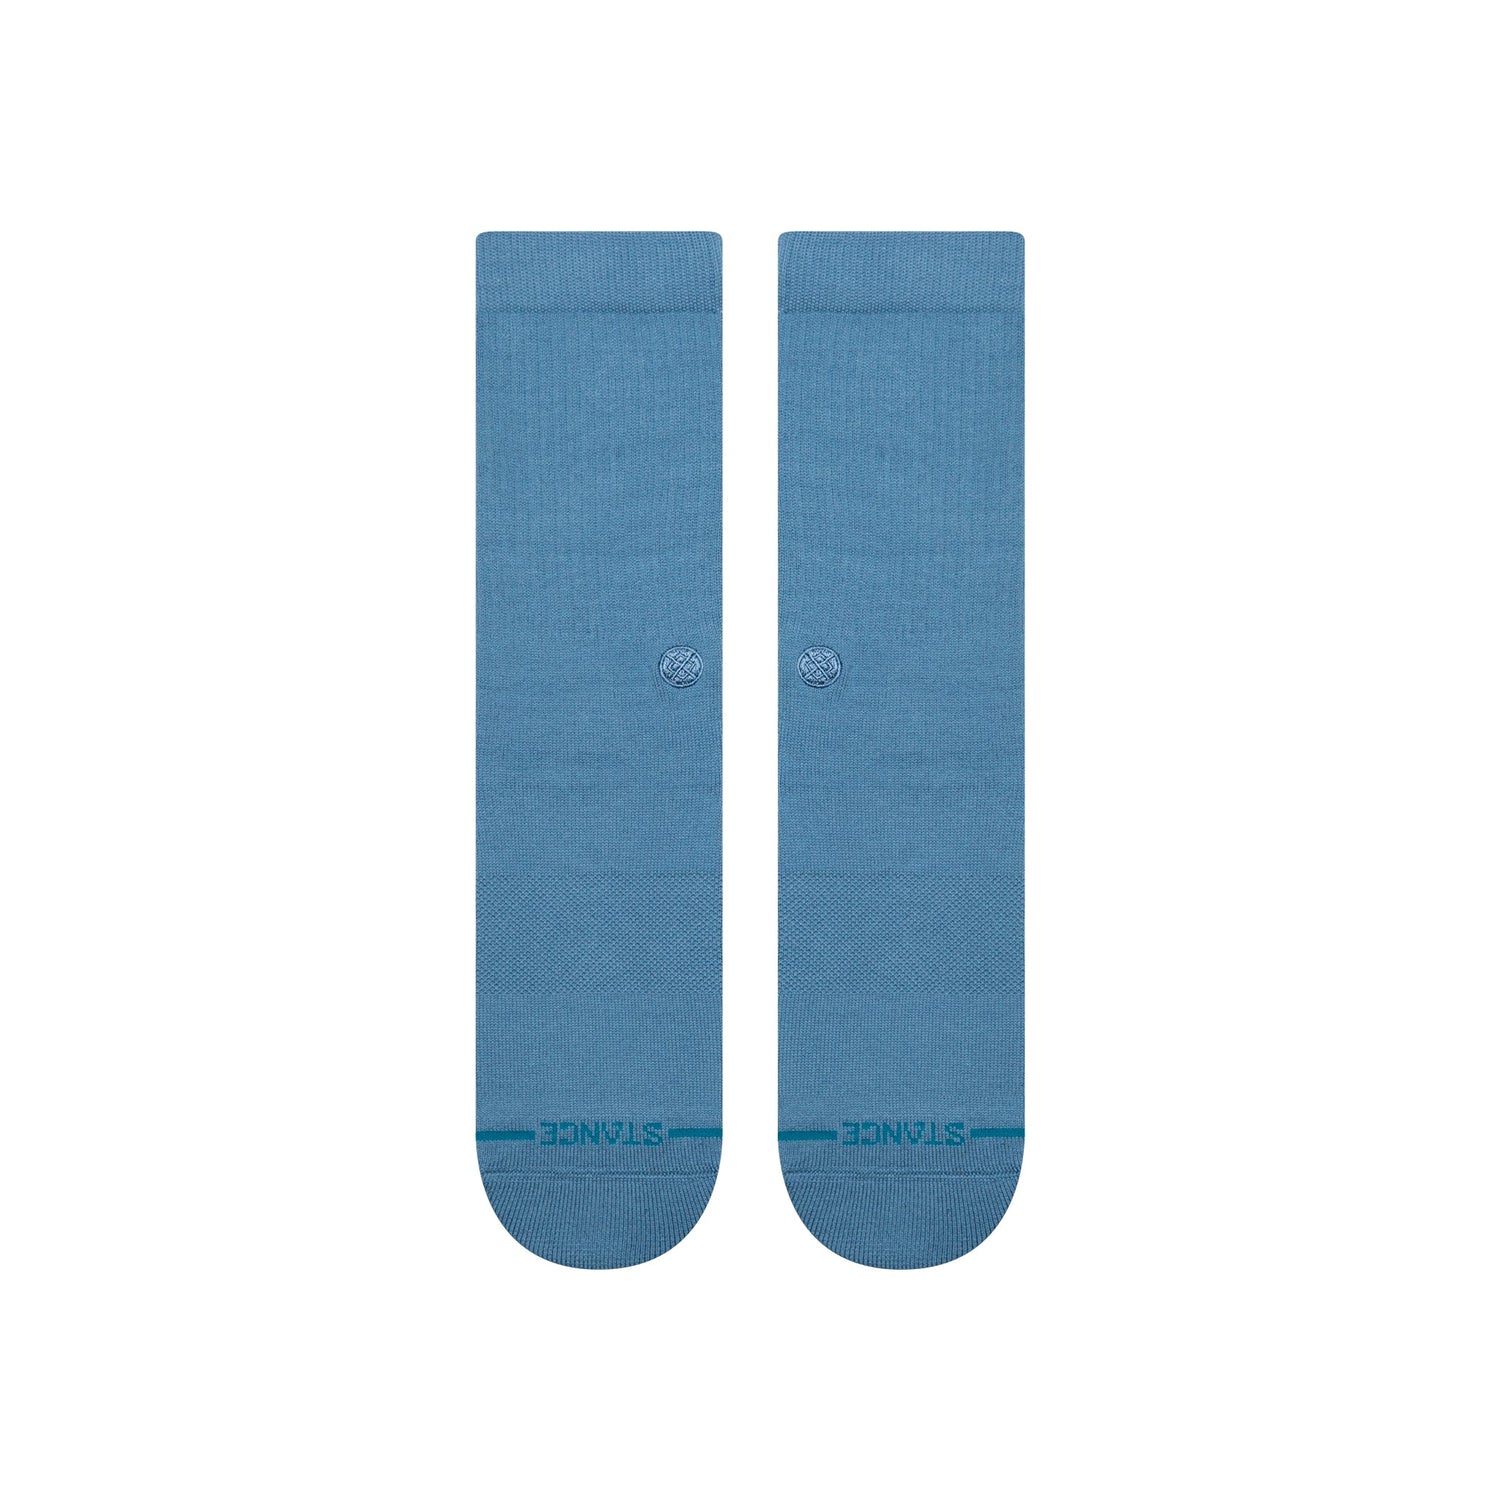 Chaussettes mi-mollet bleu acier Icon de Stance